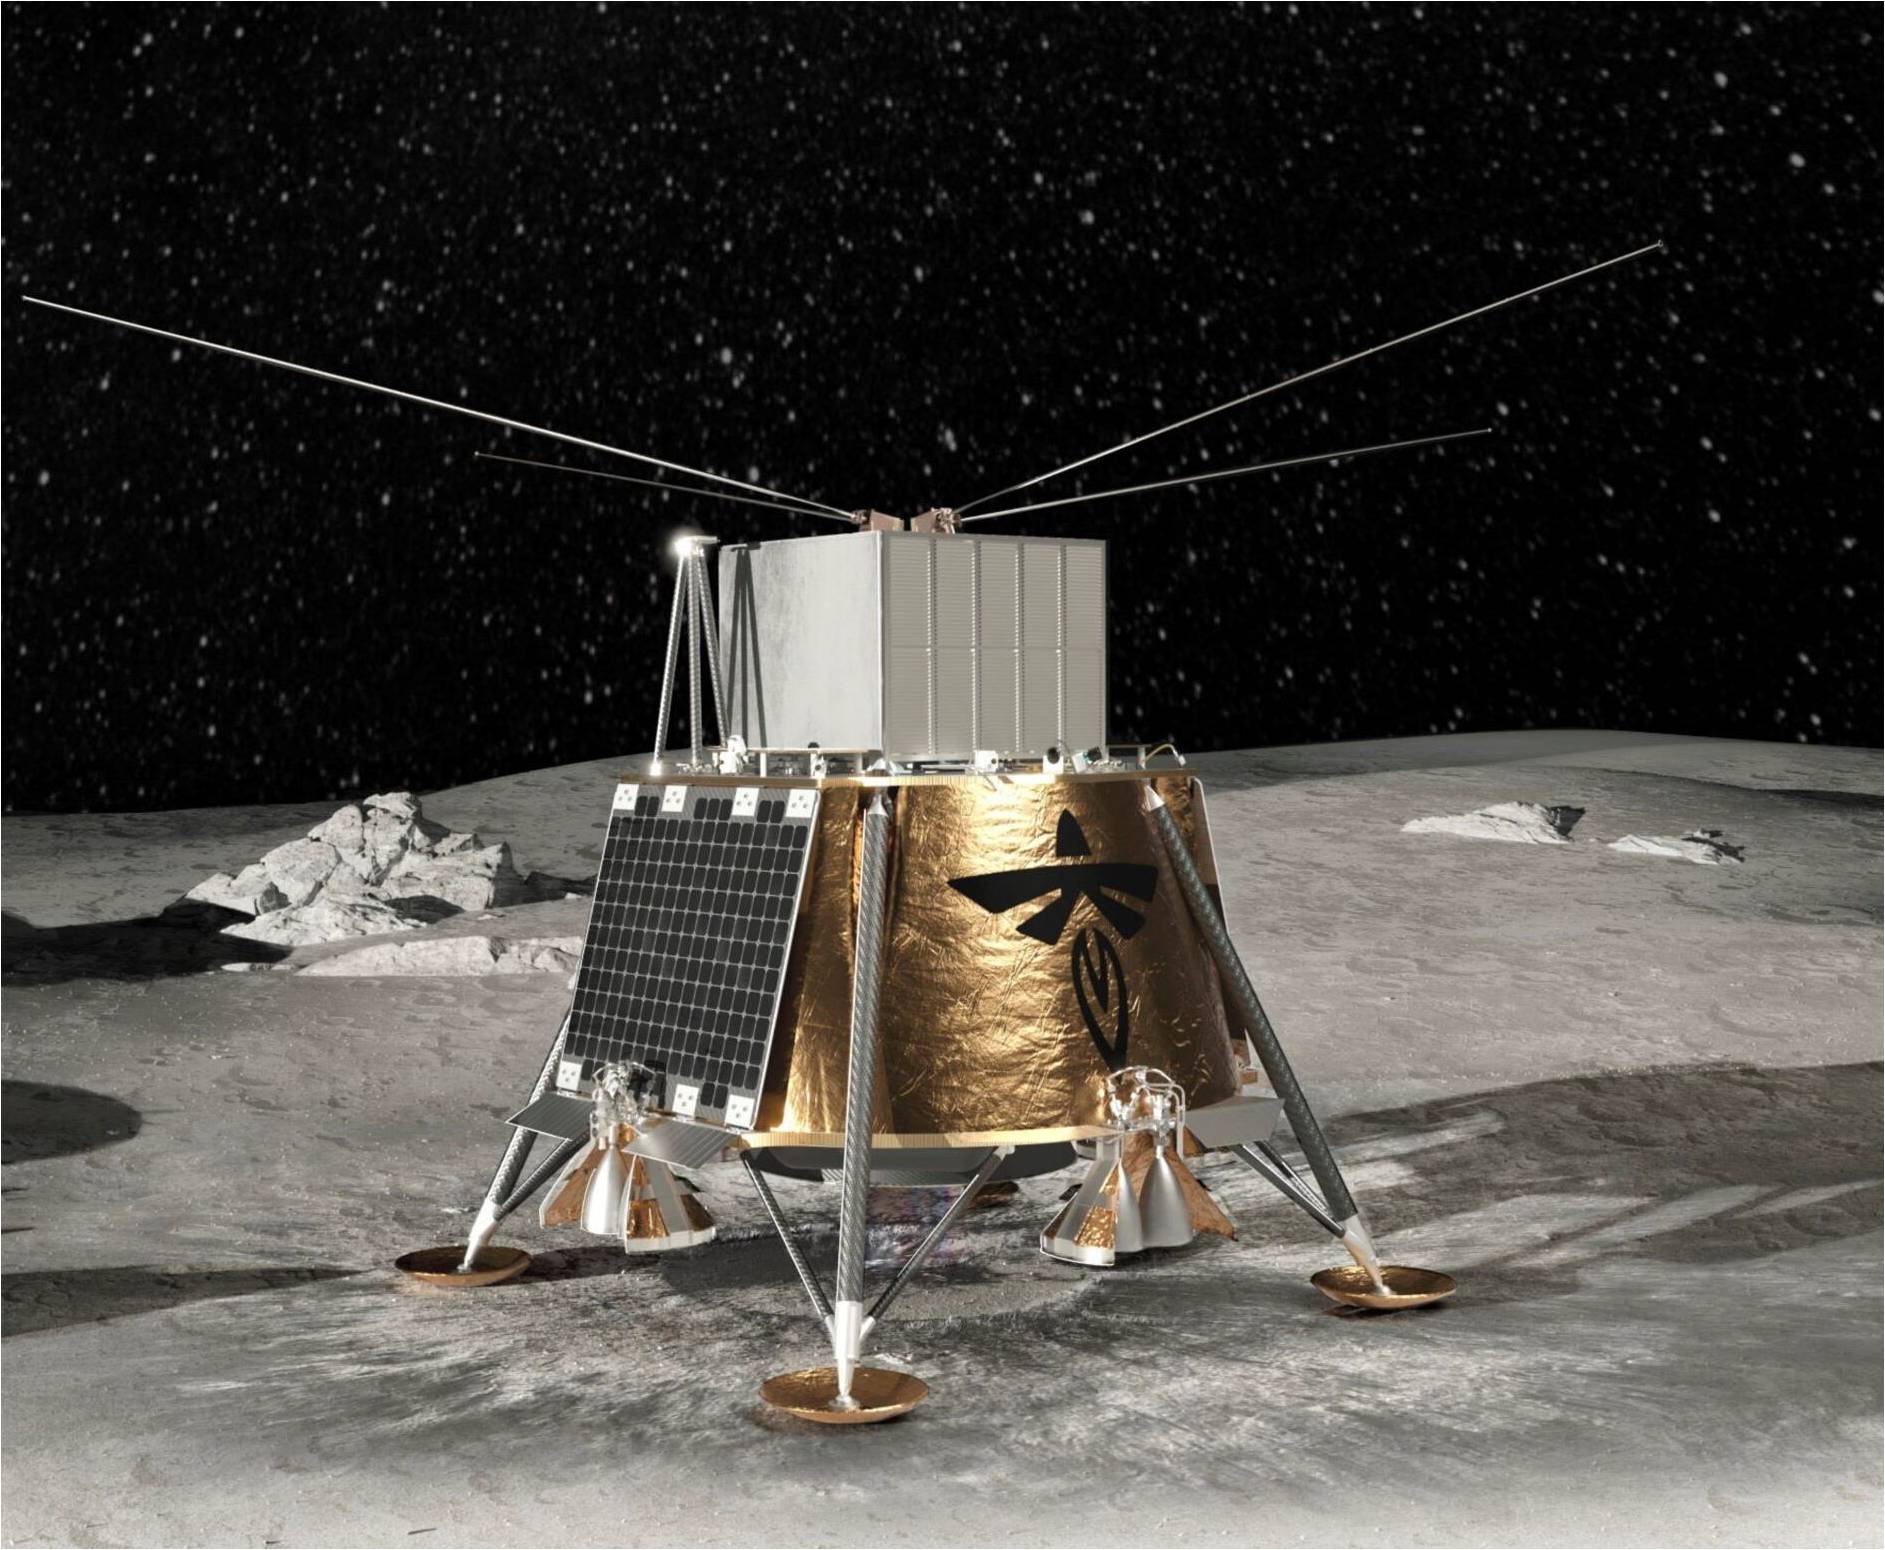 یک فضاپیمای تقریباً مکعبی شکل که در ورق طلا پیچیده شده روی ماه